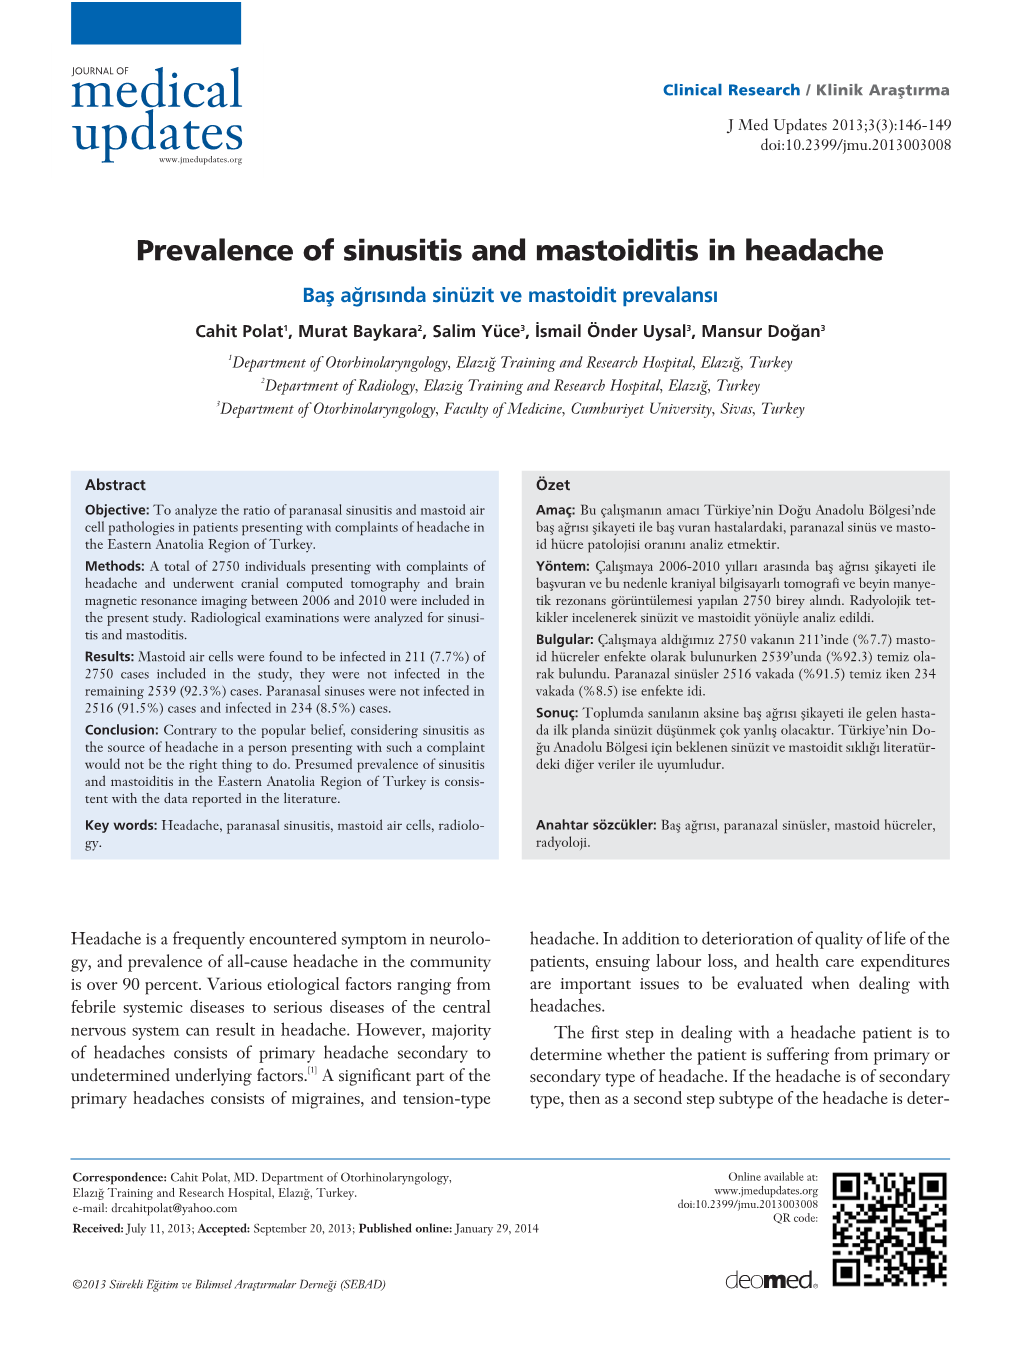 Prevalence of Sinusitis and Mastoiditis in Headache Baﬂ A¤R›S›Nda Sinüzit Ve Mastoidit Prevalans›